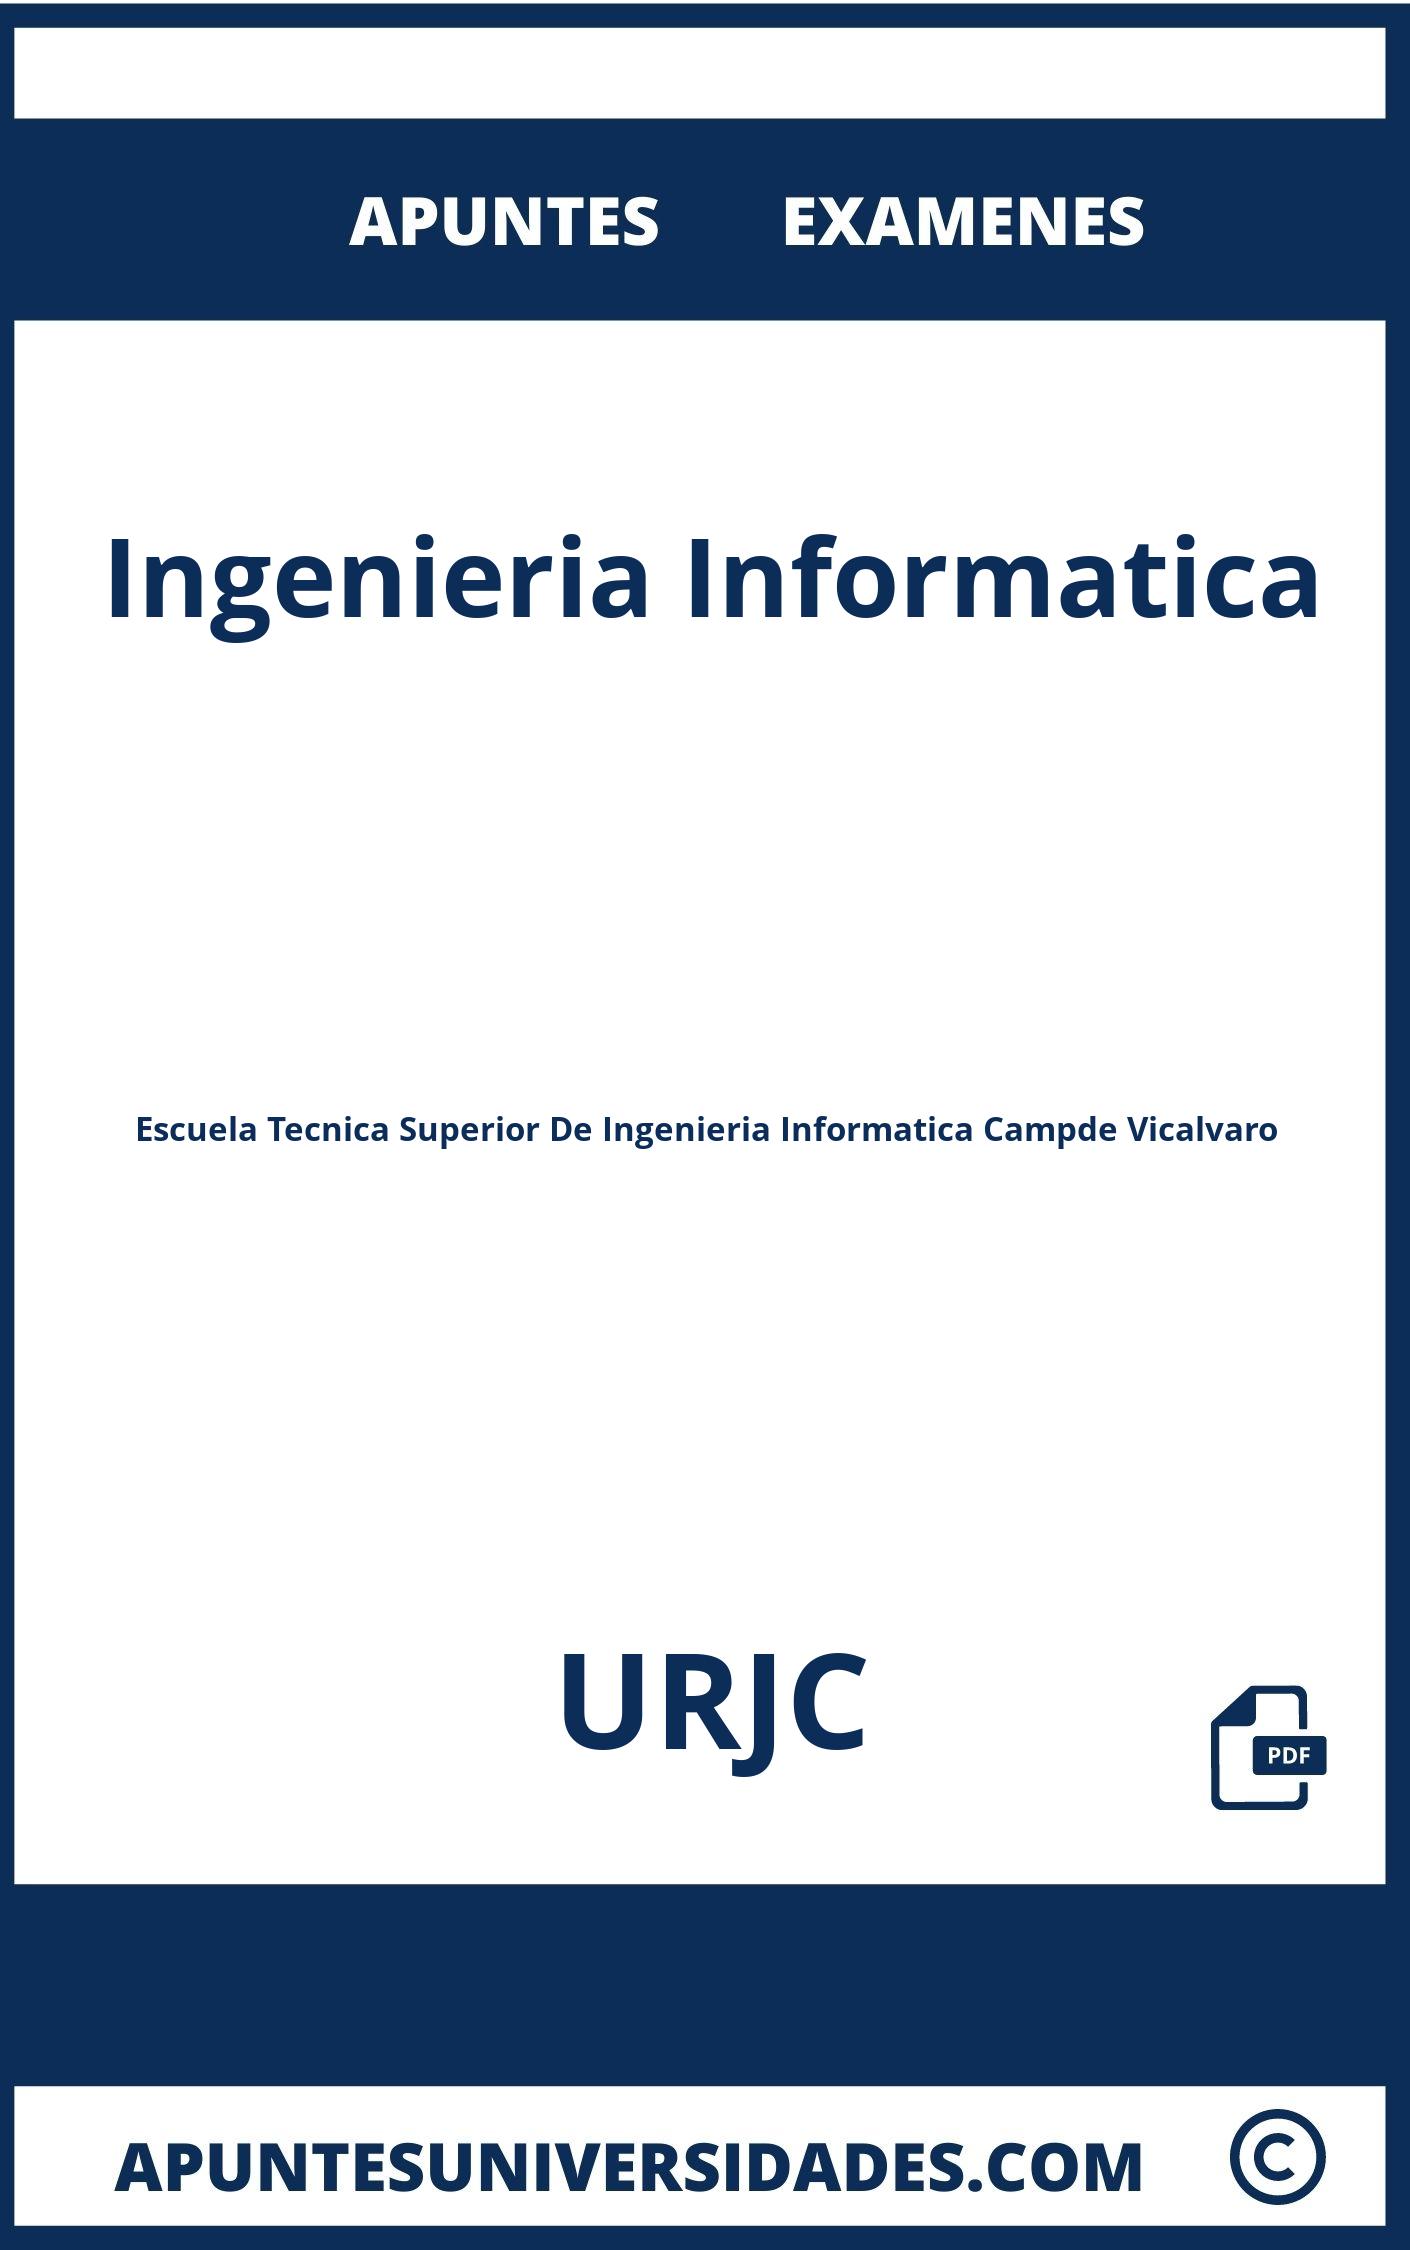 Apuntes y Examenes Ingenieria Informatica URJC